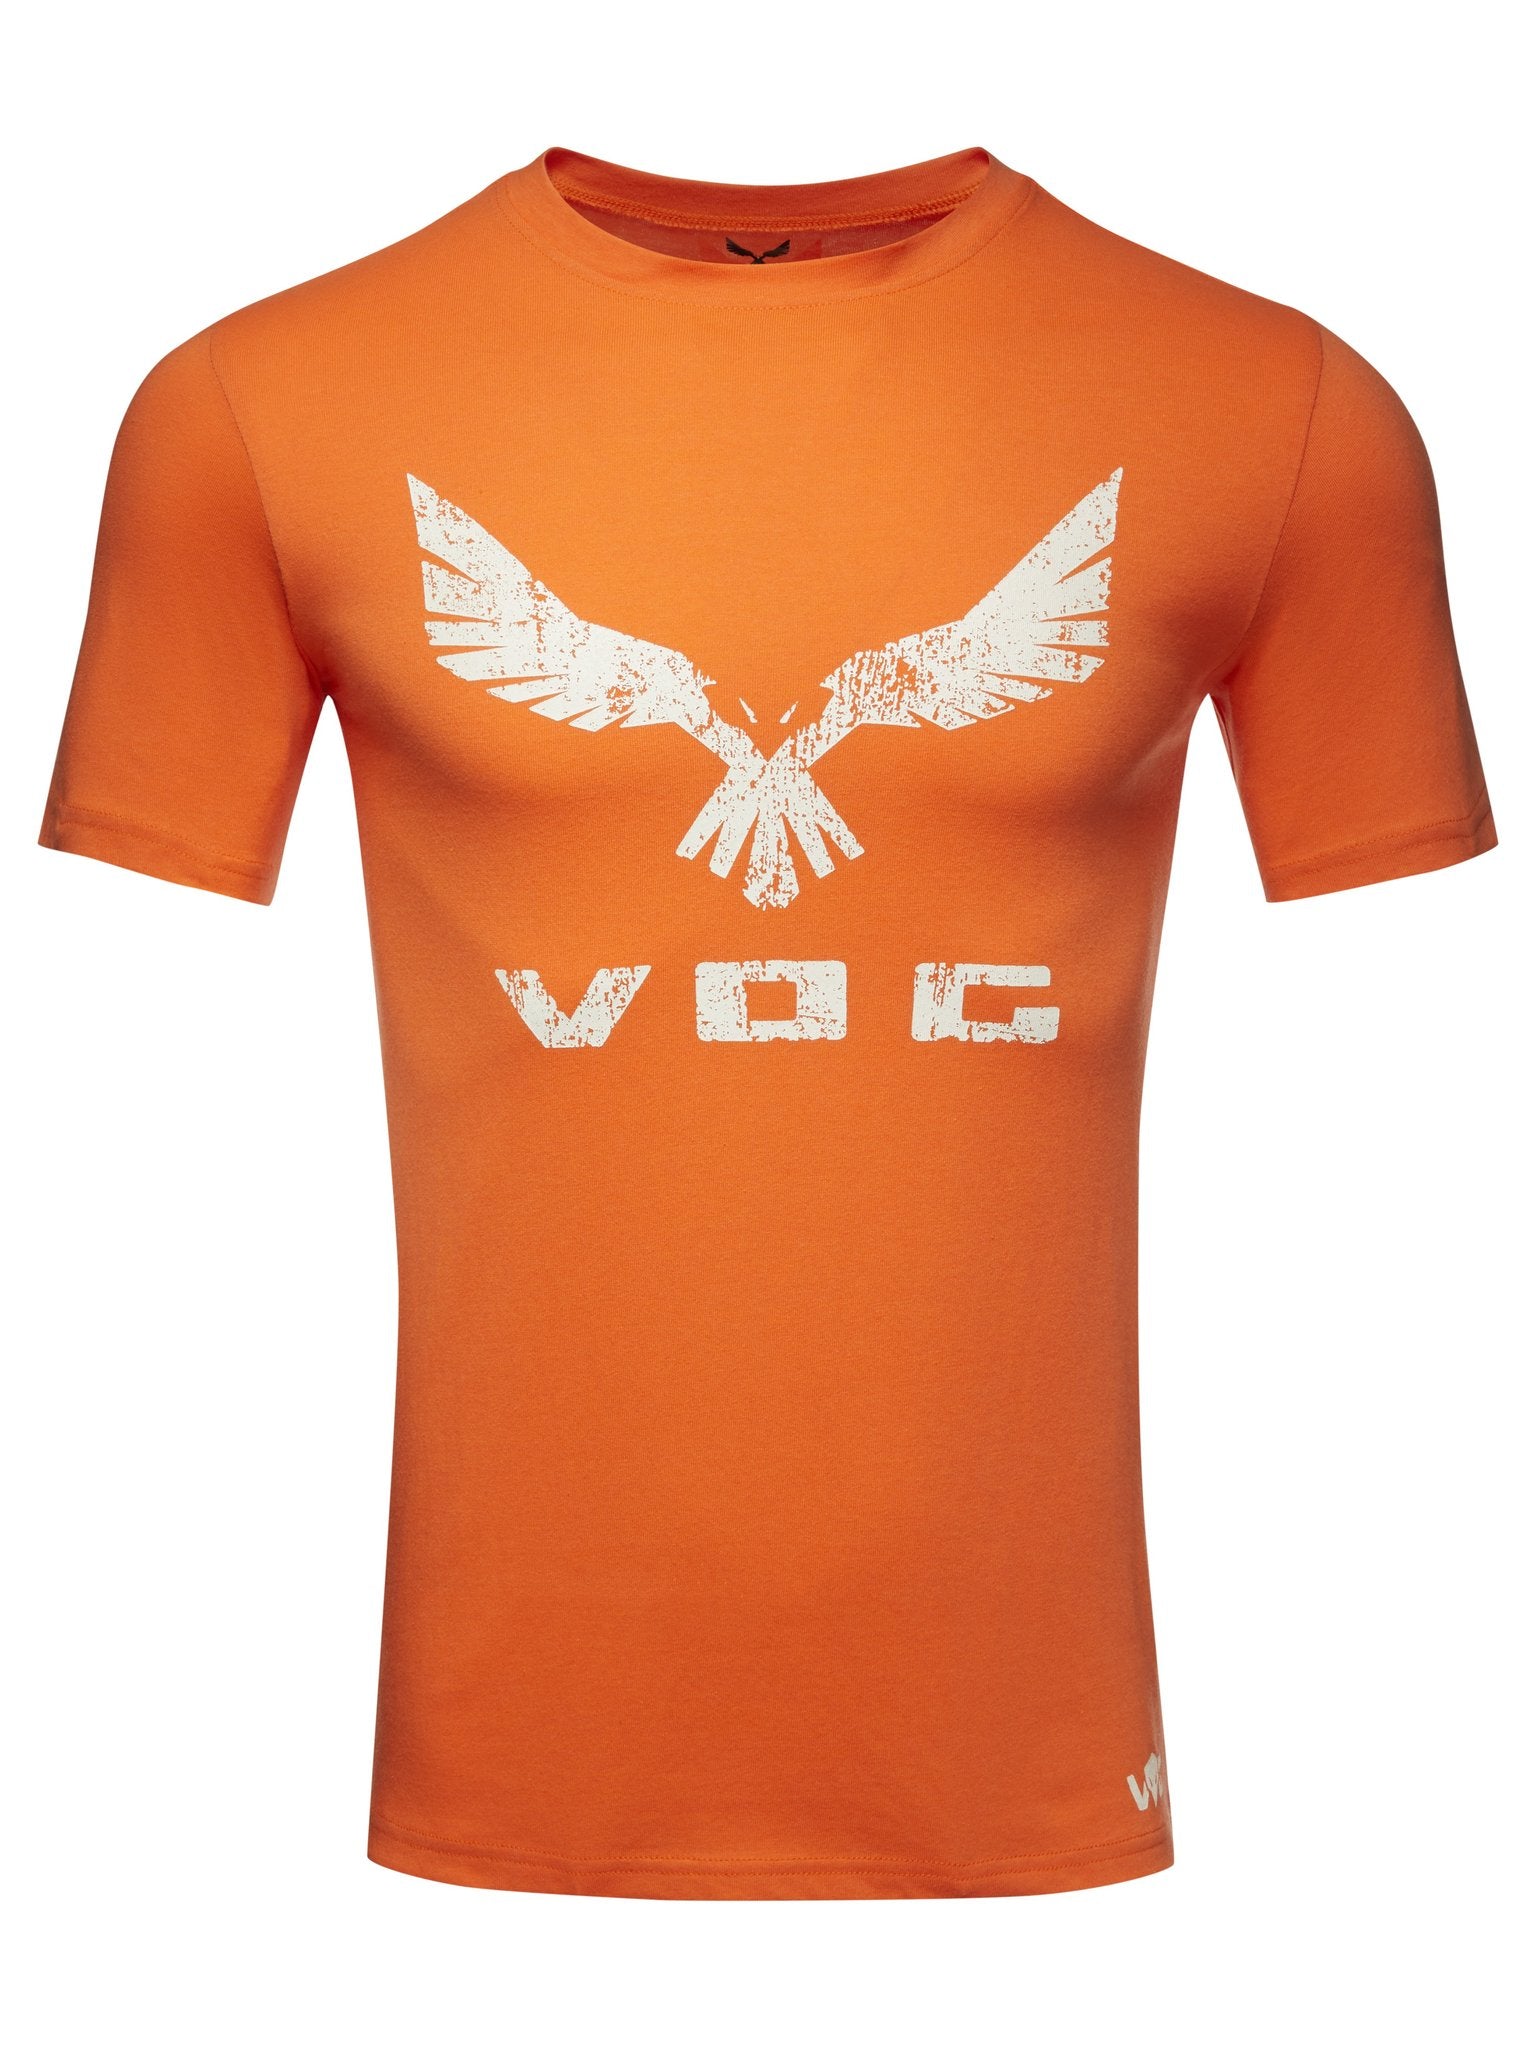 Invictus T-Shirt - Orange Pantone